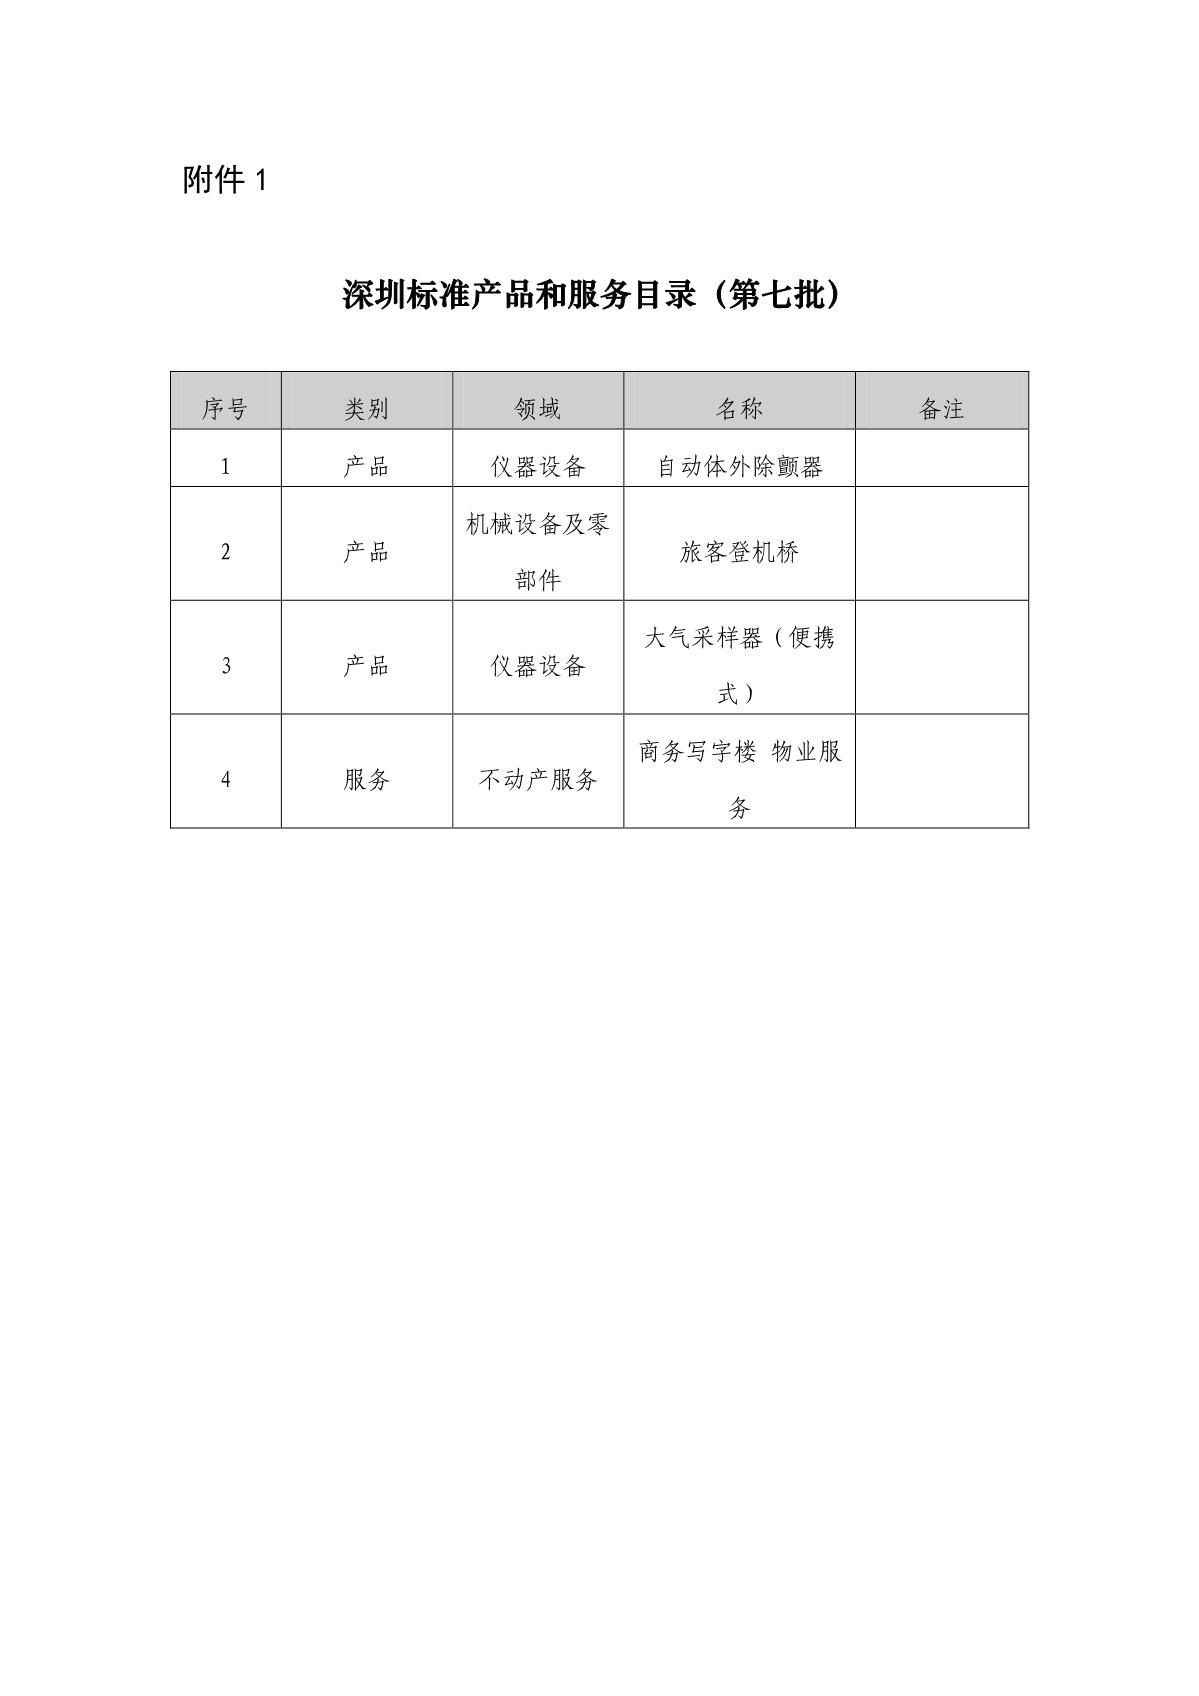 深圳标准产品和服务目录（第七批）